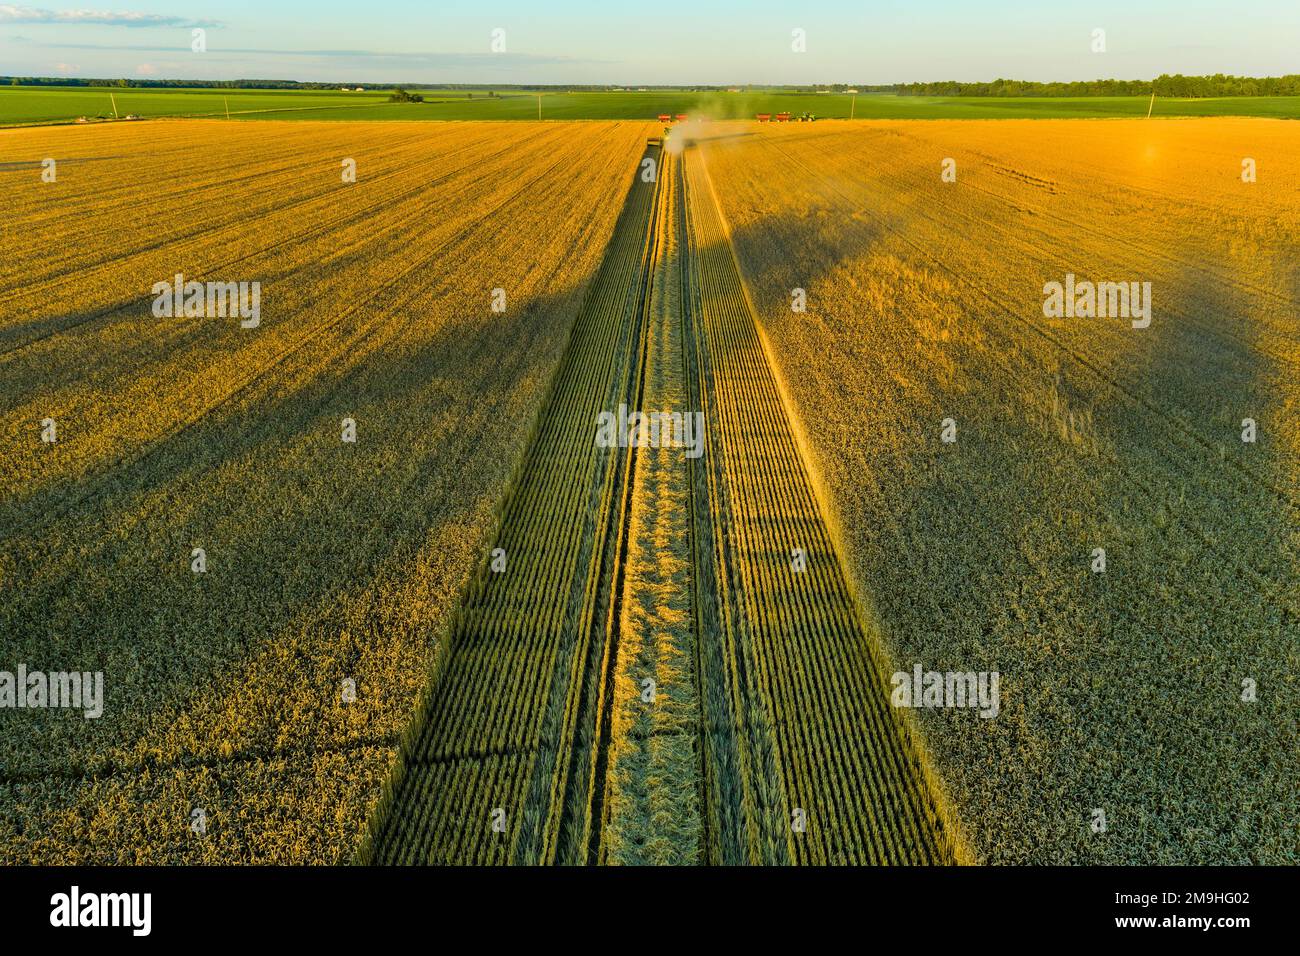 Vista aerea della mietitrebbia che raccoglie grano al tramonto, Marion County, Illinois, USA Foto Stock